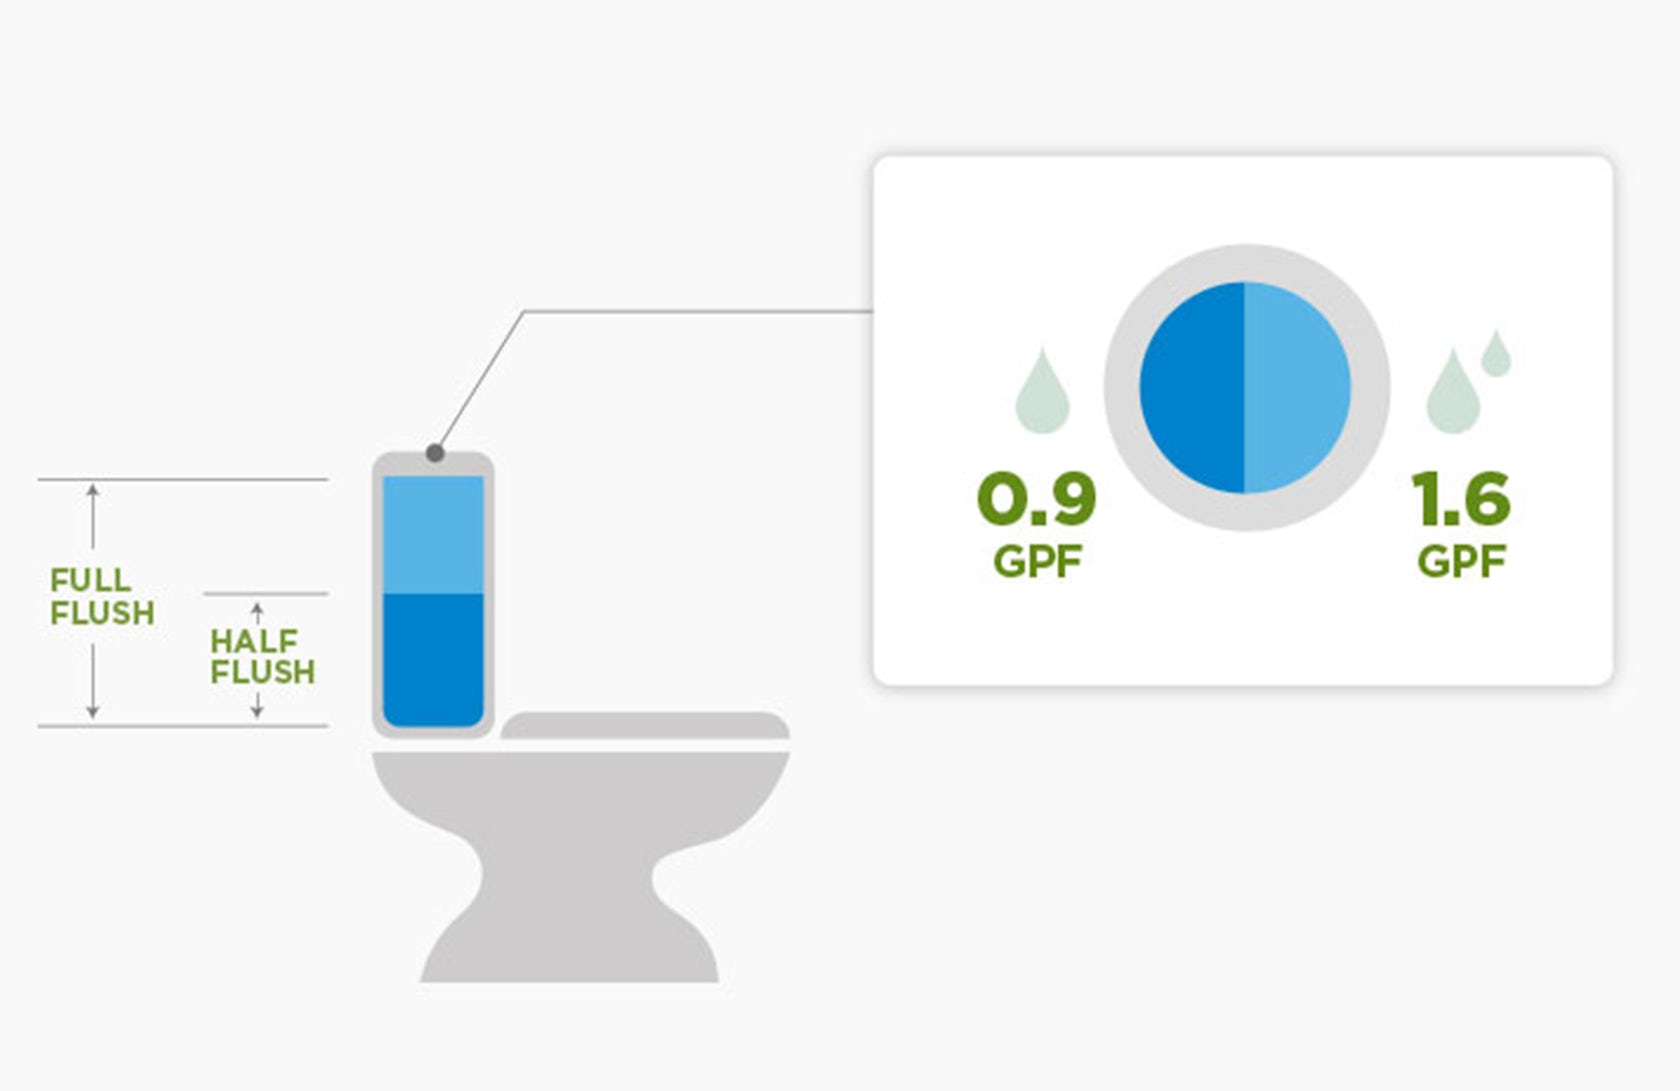 II. Importance of Proper Water Flow in Dual-Flush Toilets